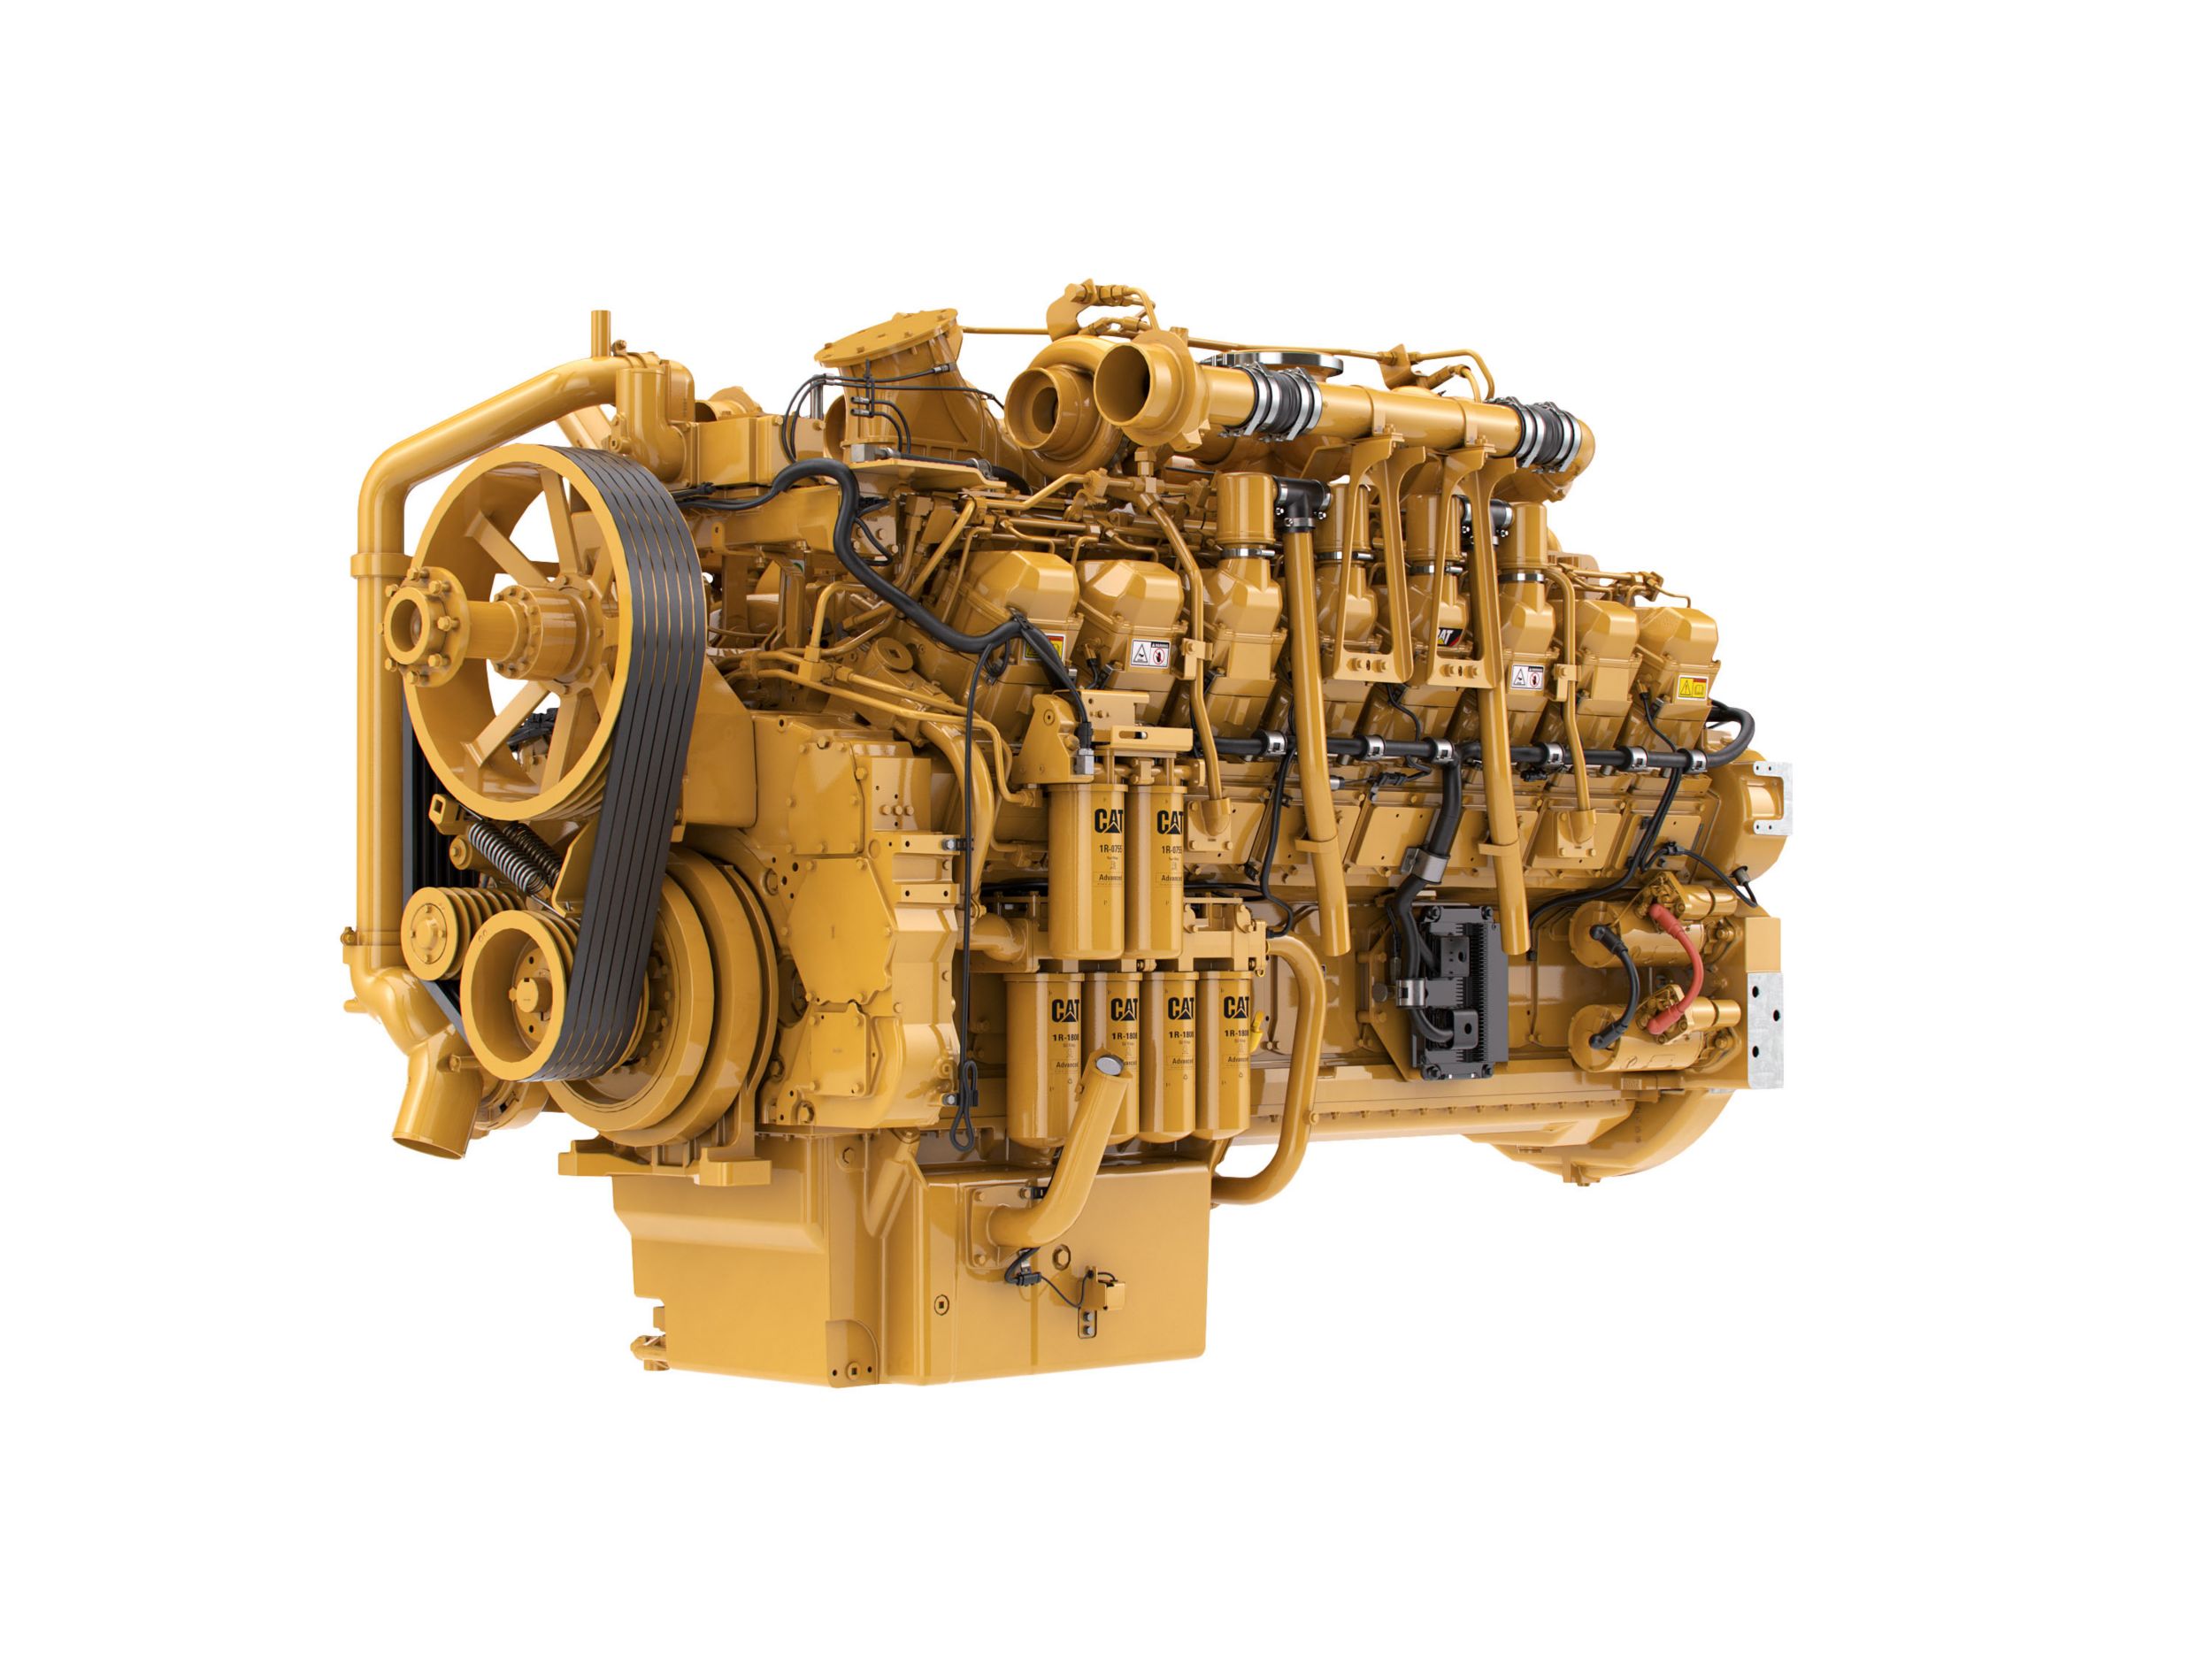 Motori diesel 3516 LRC - Aree non regolamentate o con regolamentazione minima